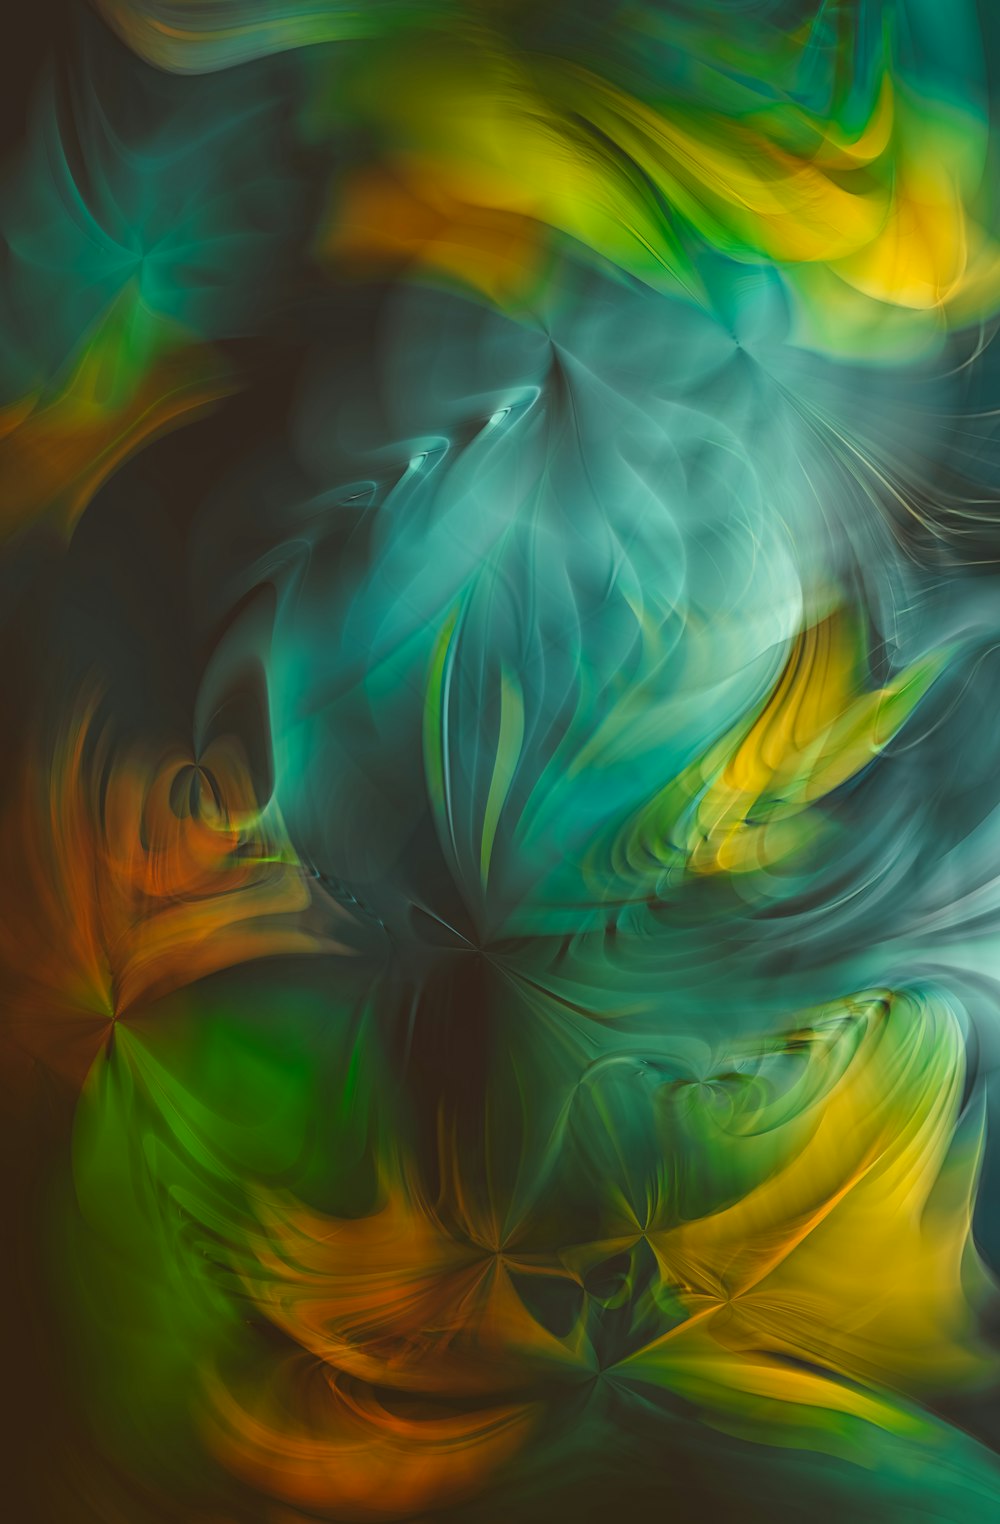 une peinture abstraite de couleurs vertes, jaunes et oranges